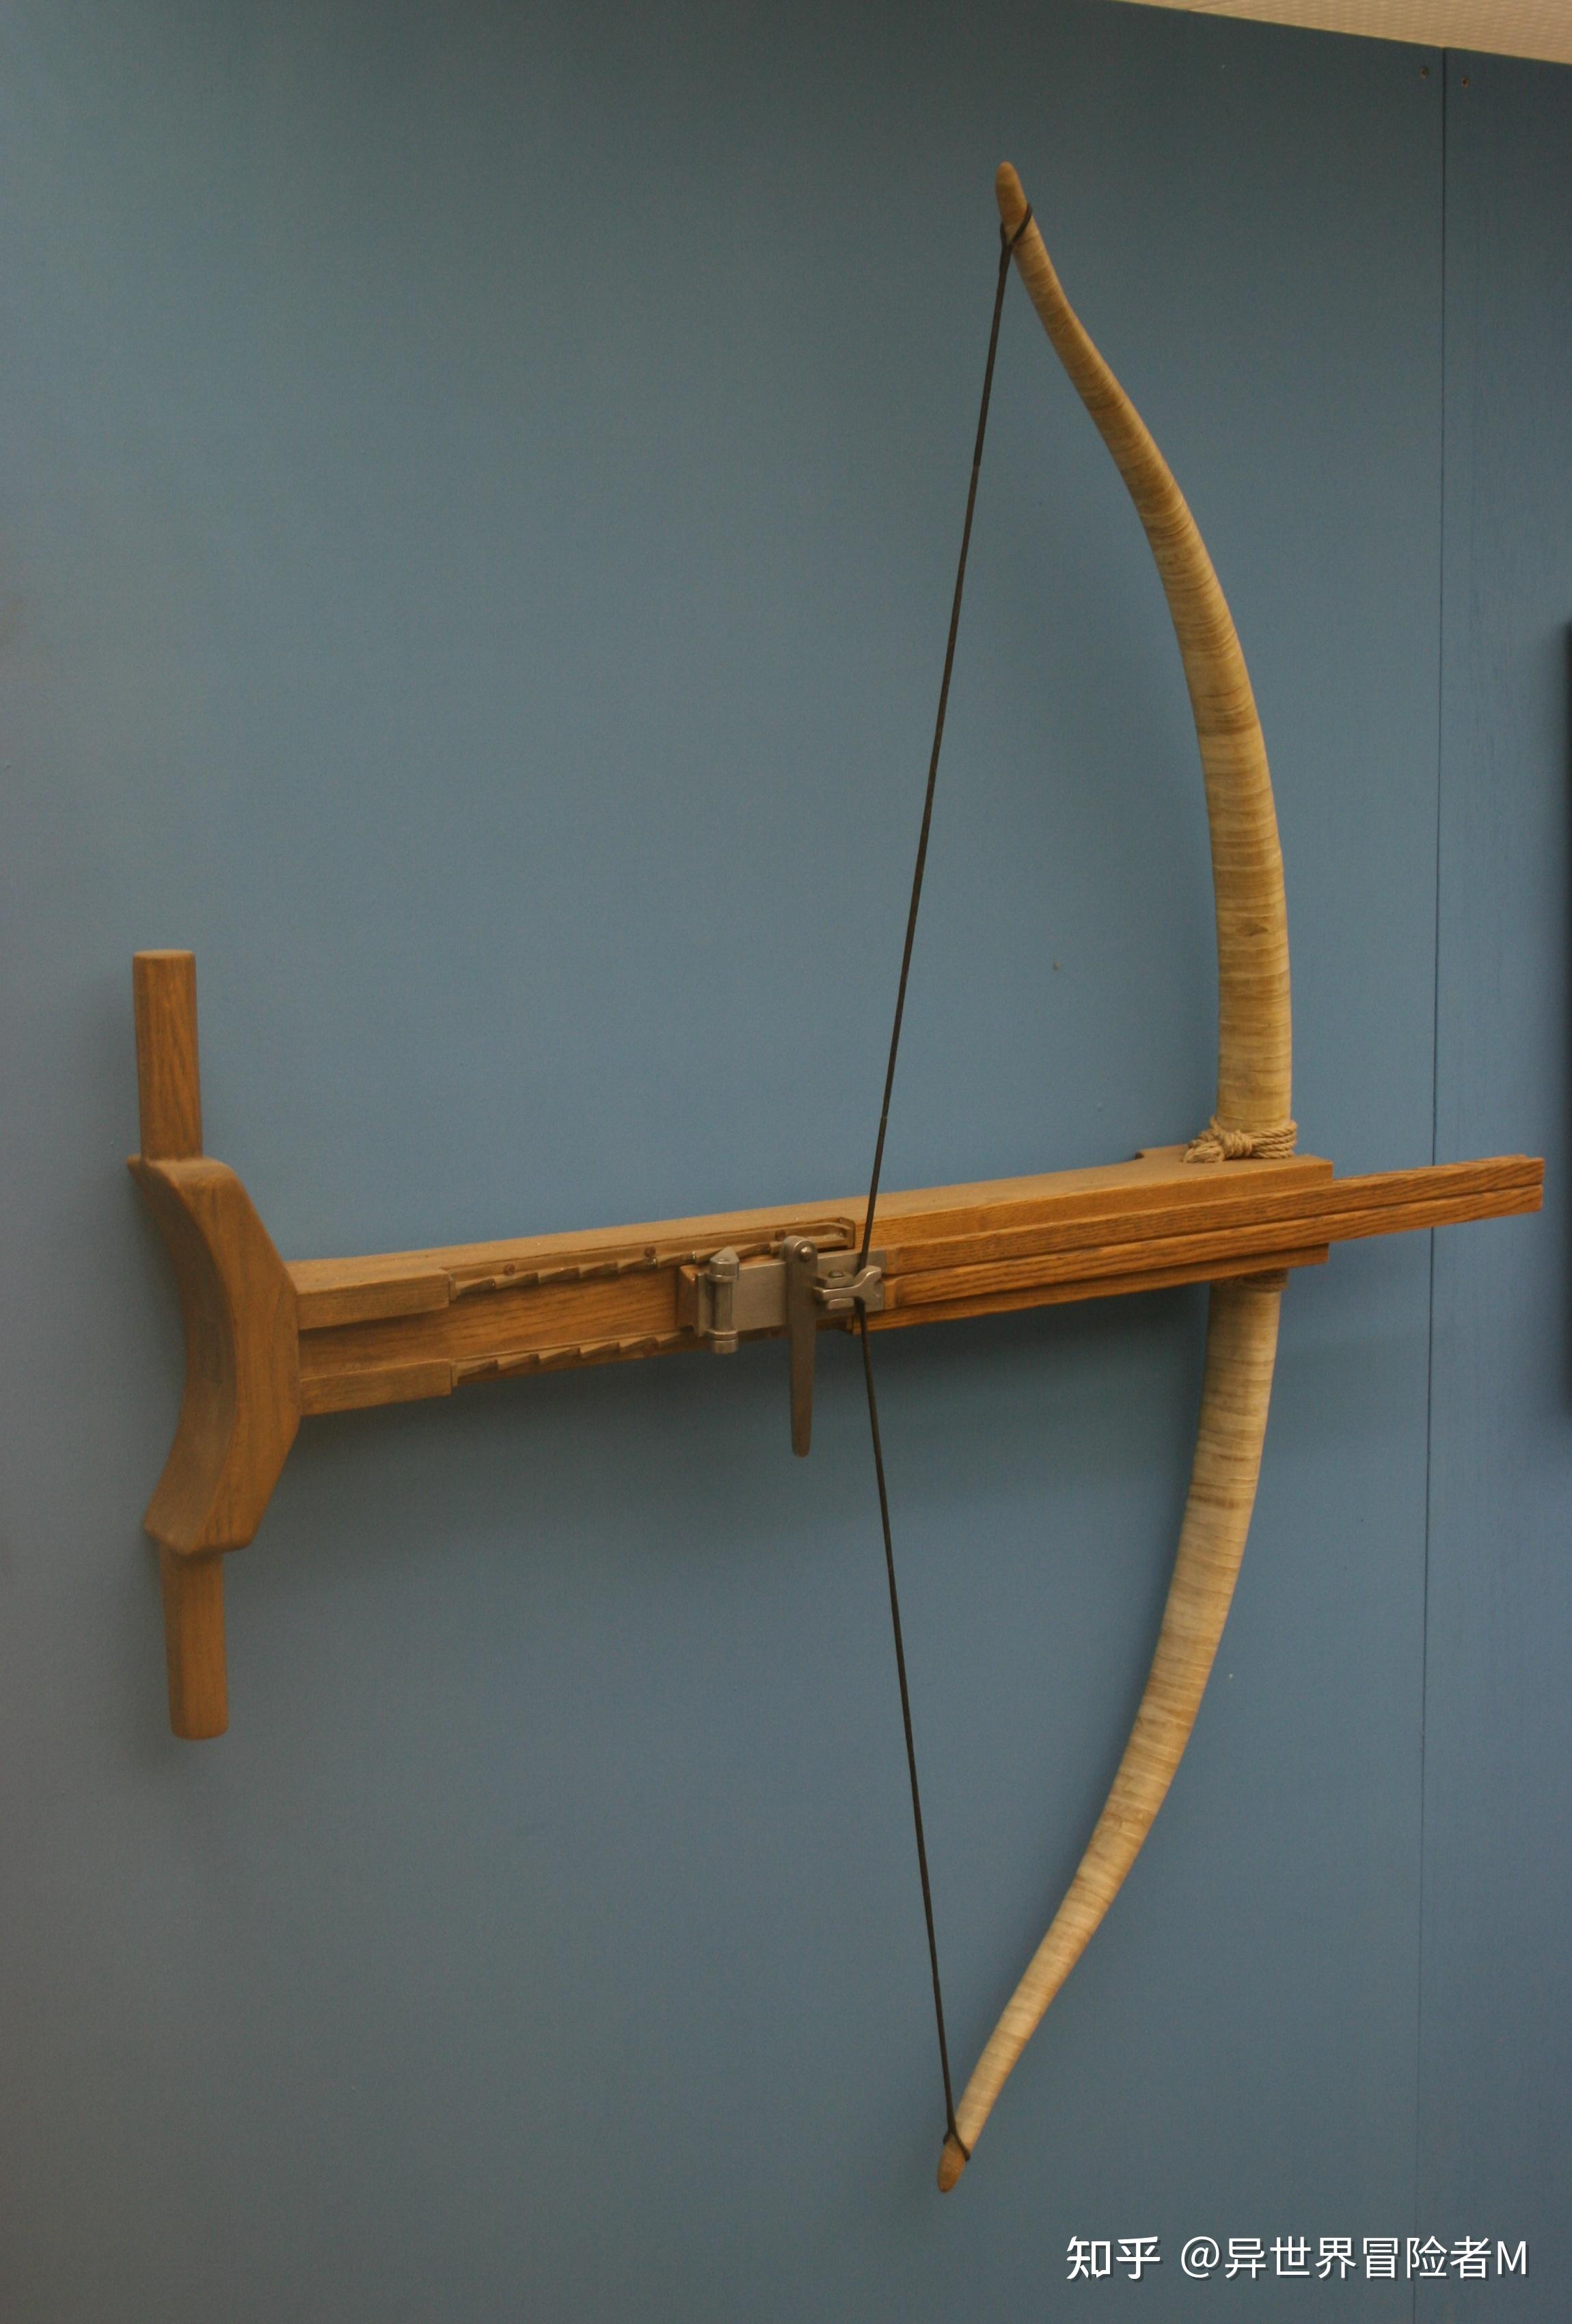 儿童竹木弓箭 户外射击玩具无杀伤力诸葛连弩古代兵器模型木弓-阿里巴巴